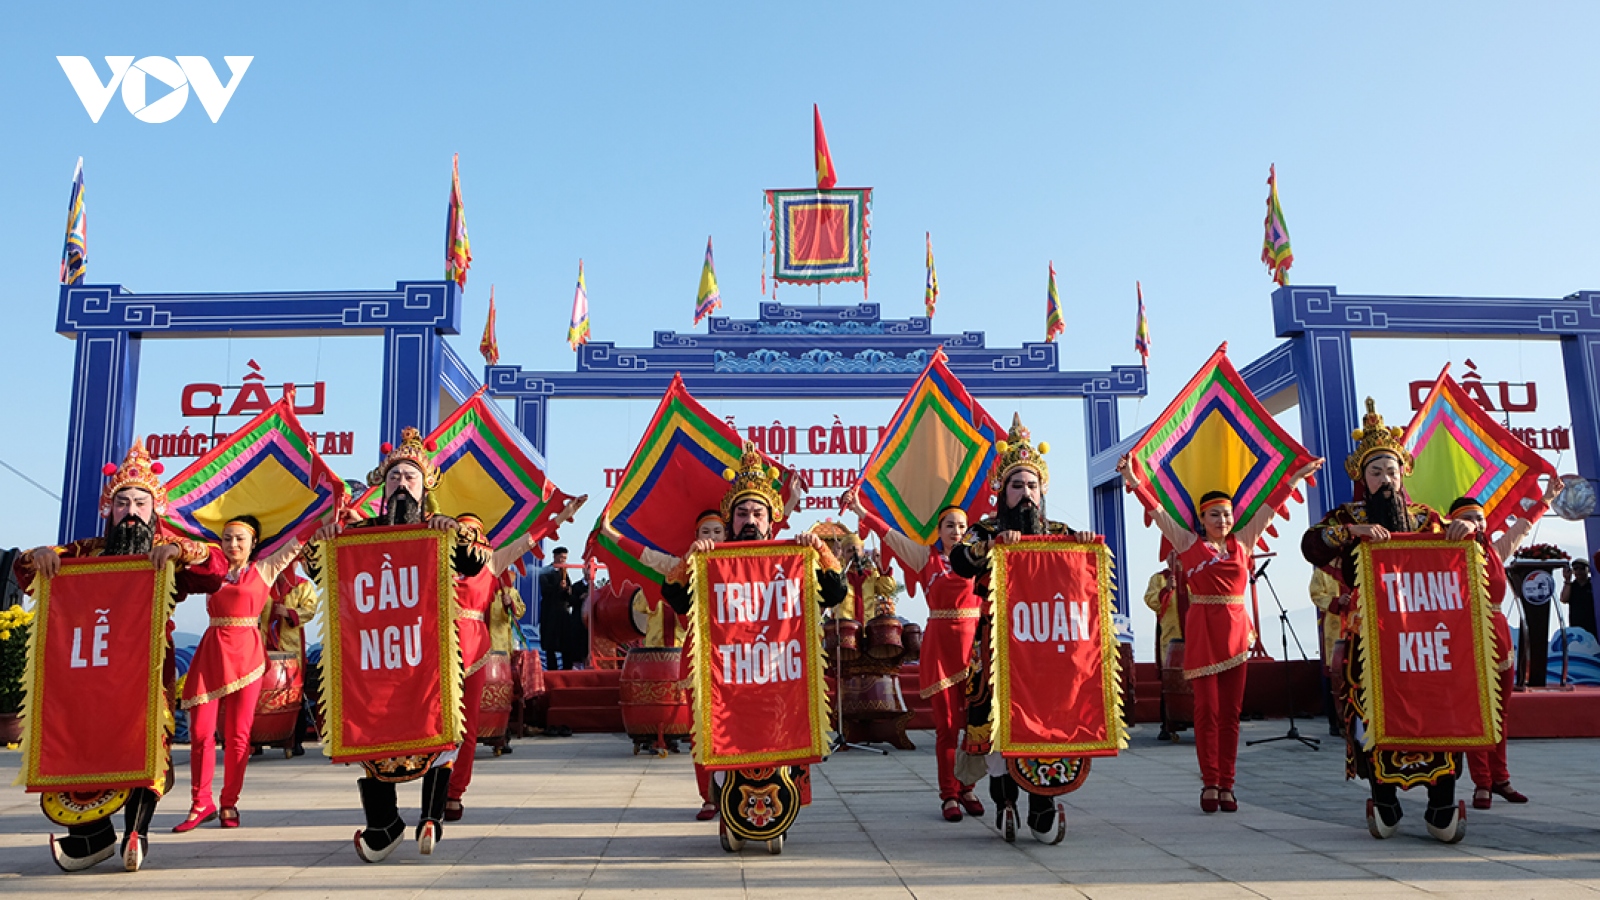 Đưa Lễ hội Cầu ngư truyền thống quận Thanh Khê thành sản phẩm đặc trưng